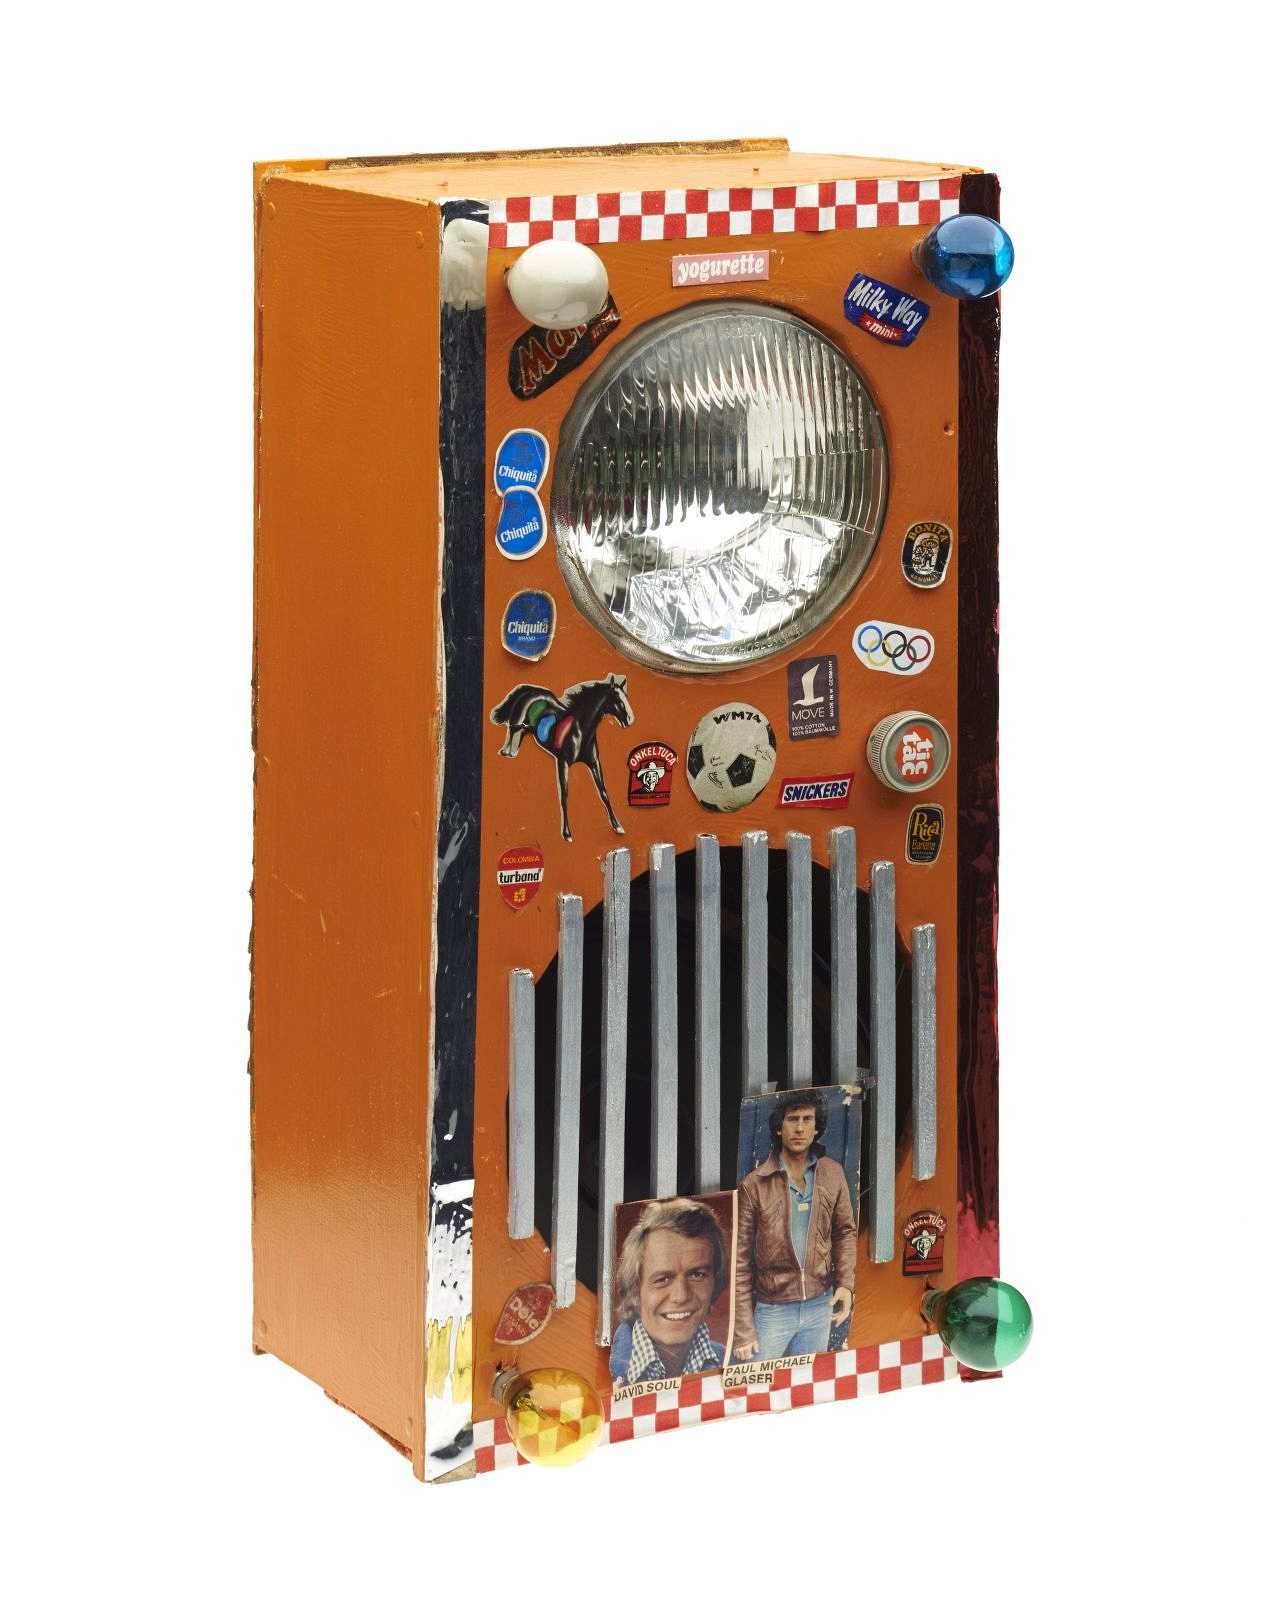 Hochrechteckiger Sperrholzkasten, orange lackiert. Eine Aussparung für den Lautsprecher mit einem silberfarbenem Gitter. Darüber eine weiße Autoleuchte. Verzierung: farbige Glühlämpchen, diverse westliche Produktaufkleber, Bilder von Starsky und Hutch.